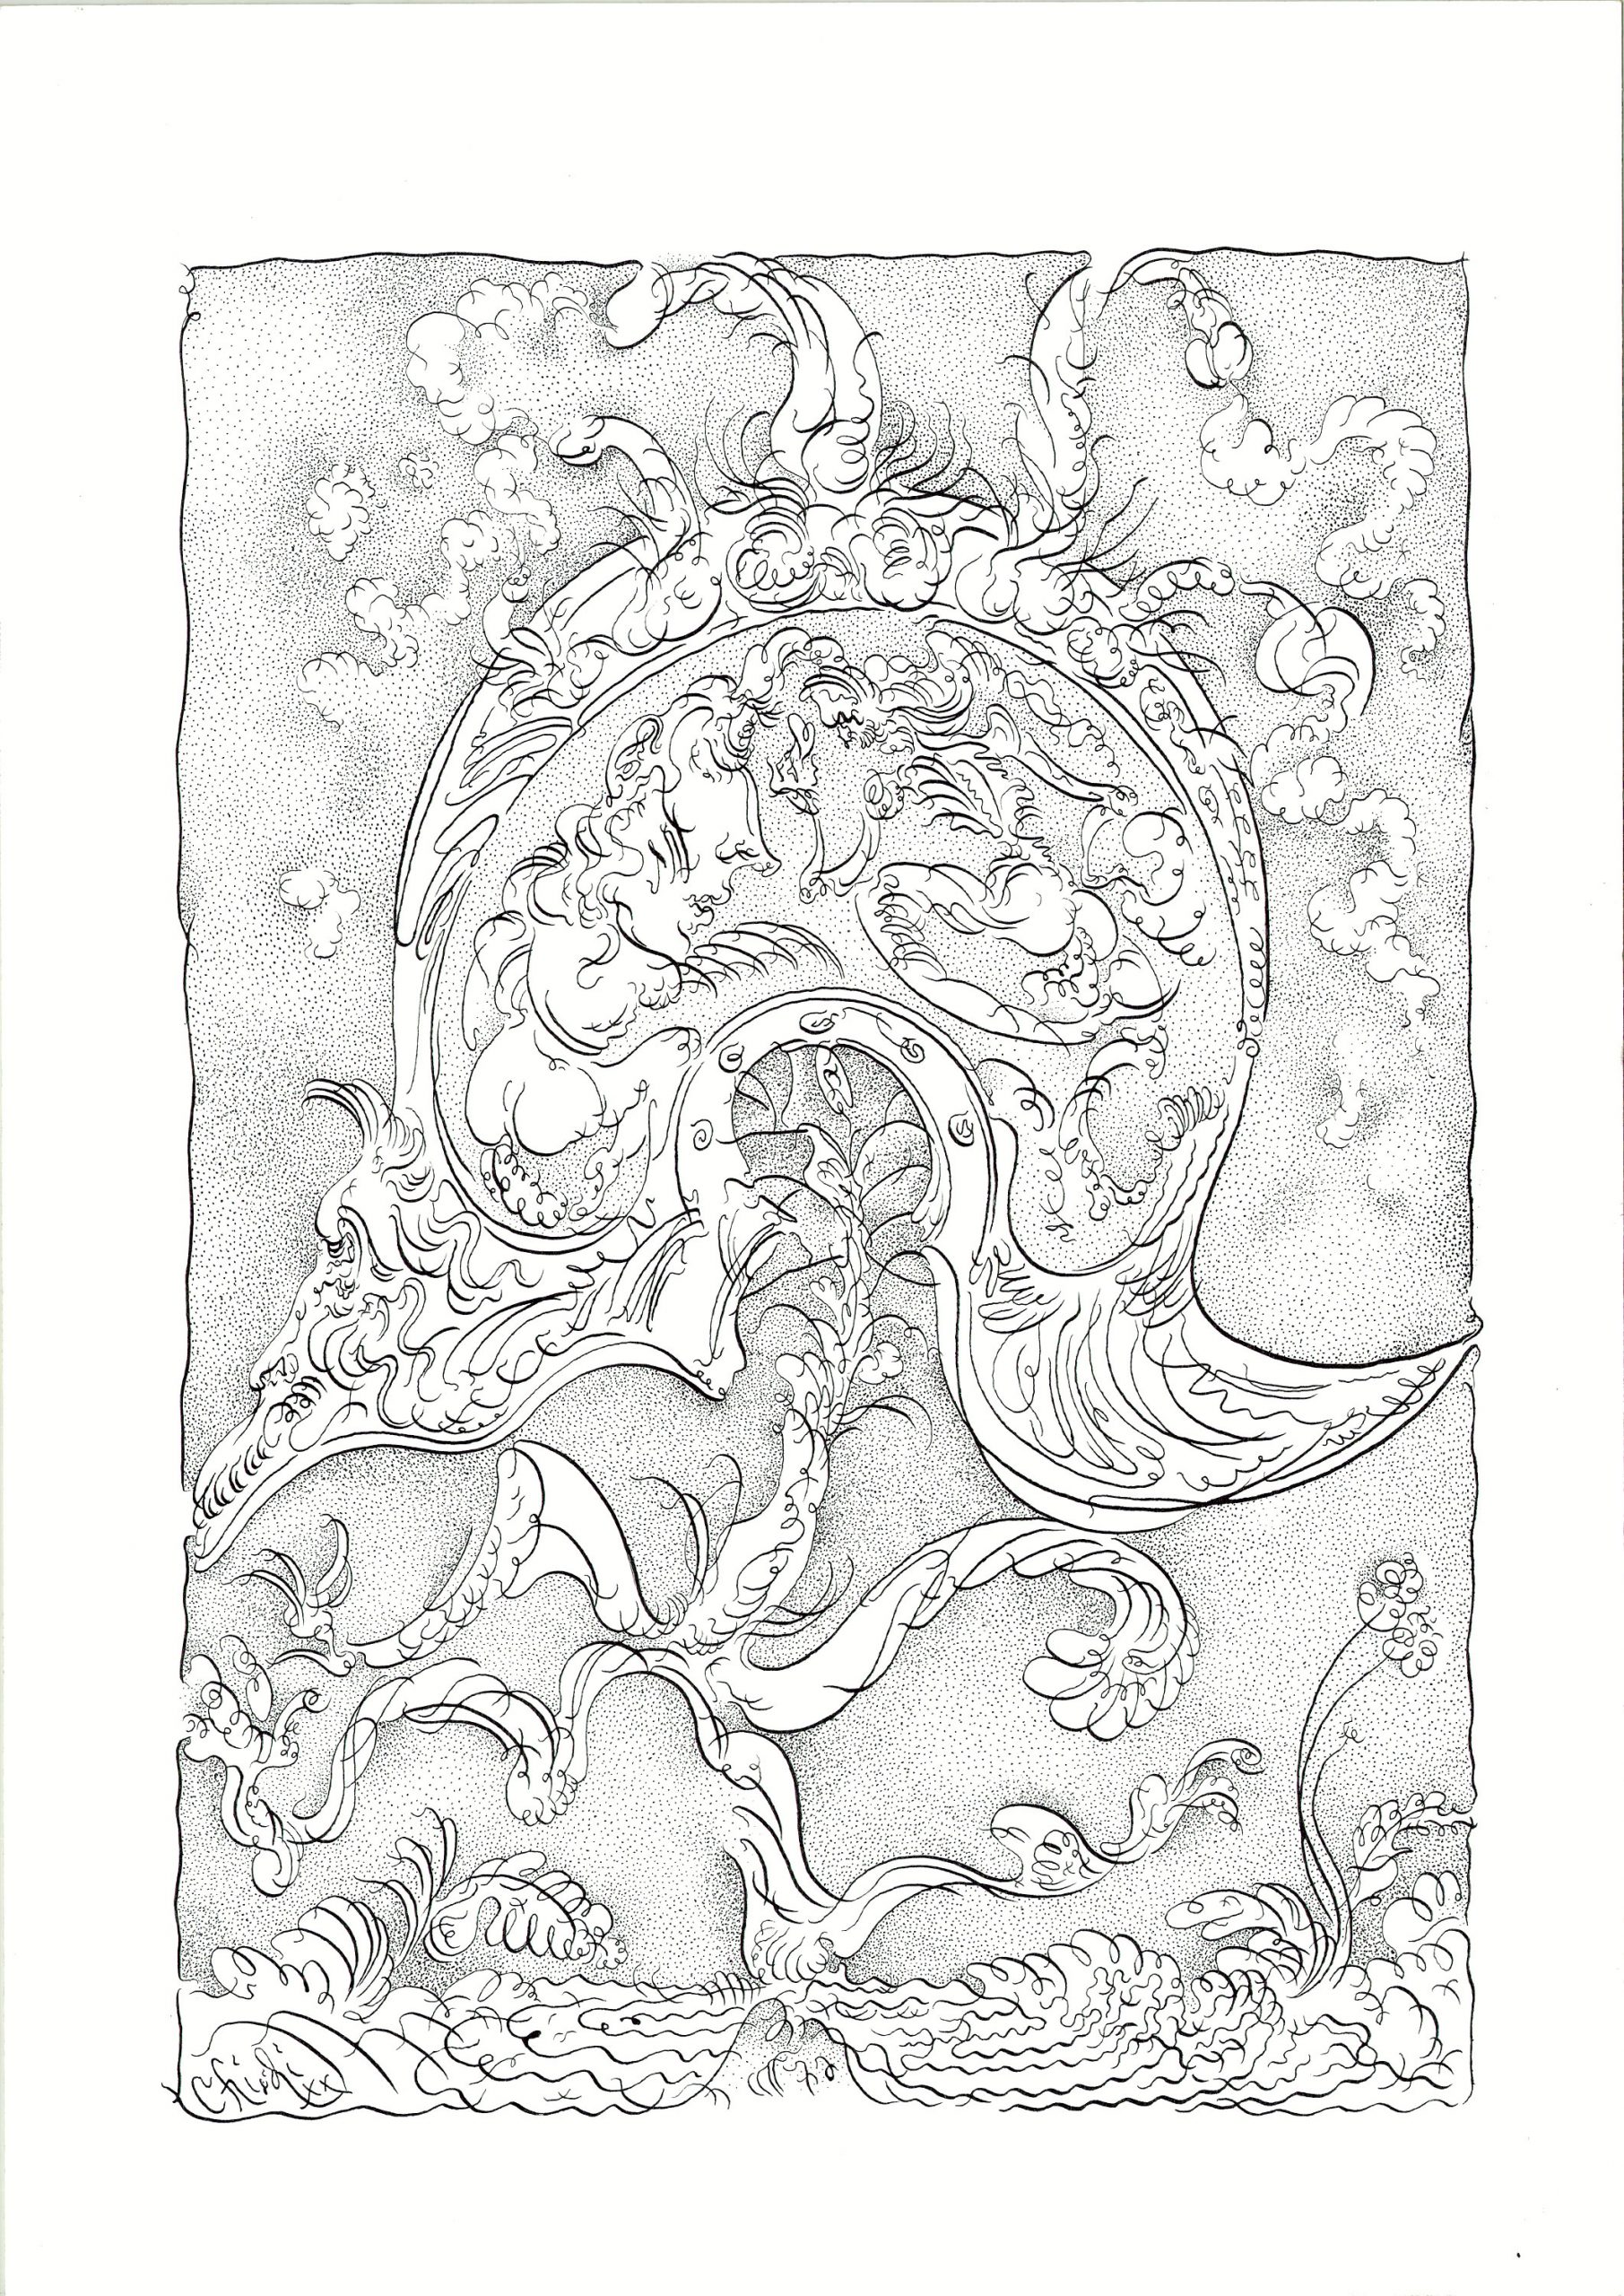 Umberto Chiodi, Elmo, china su carta, 51 x 36 cm, 2020 (courtesy dell'artista)